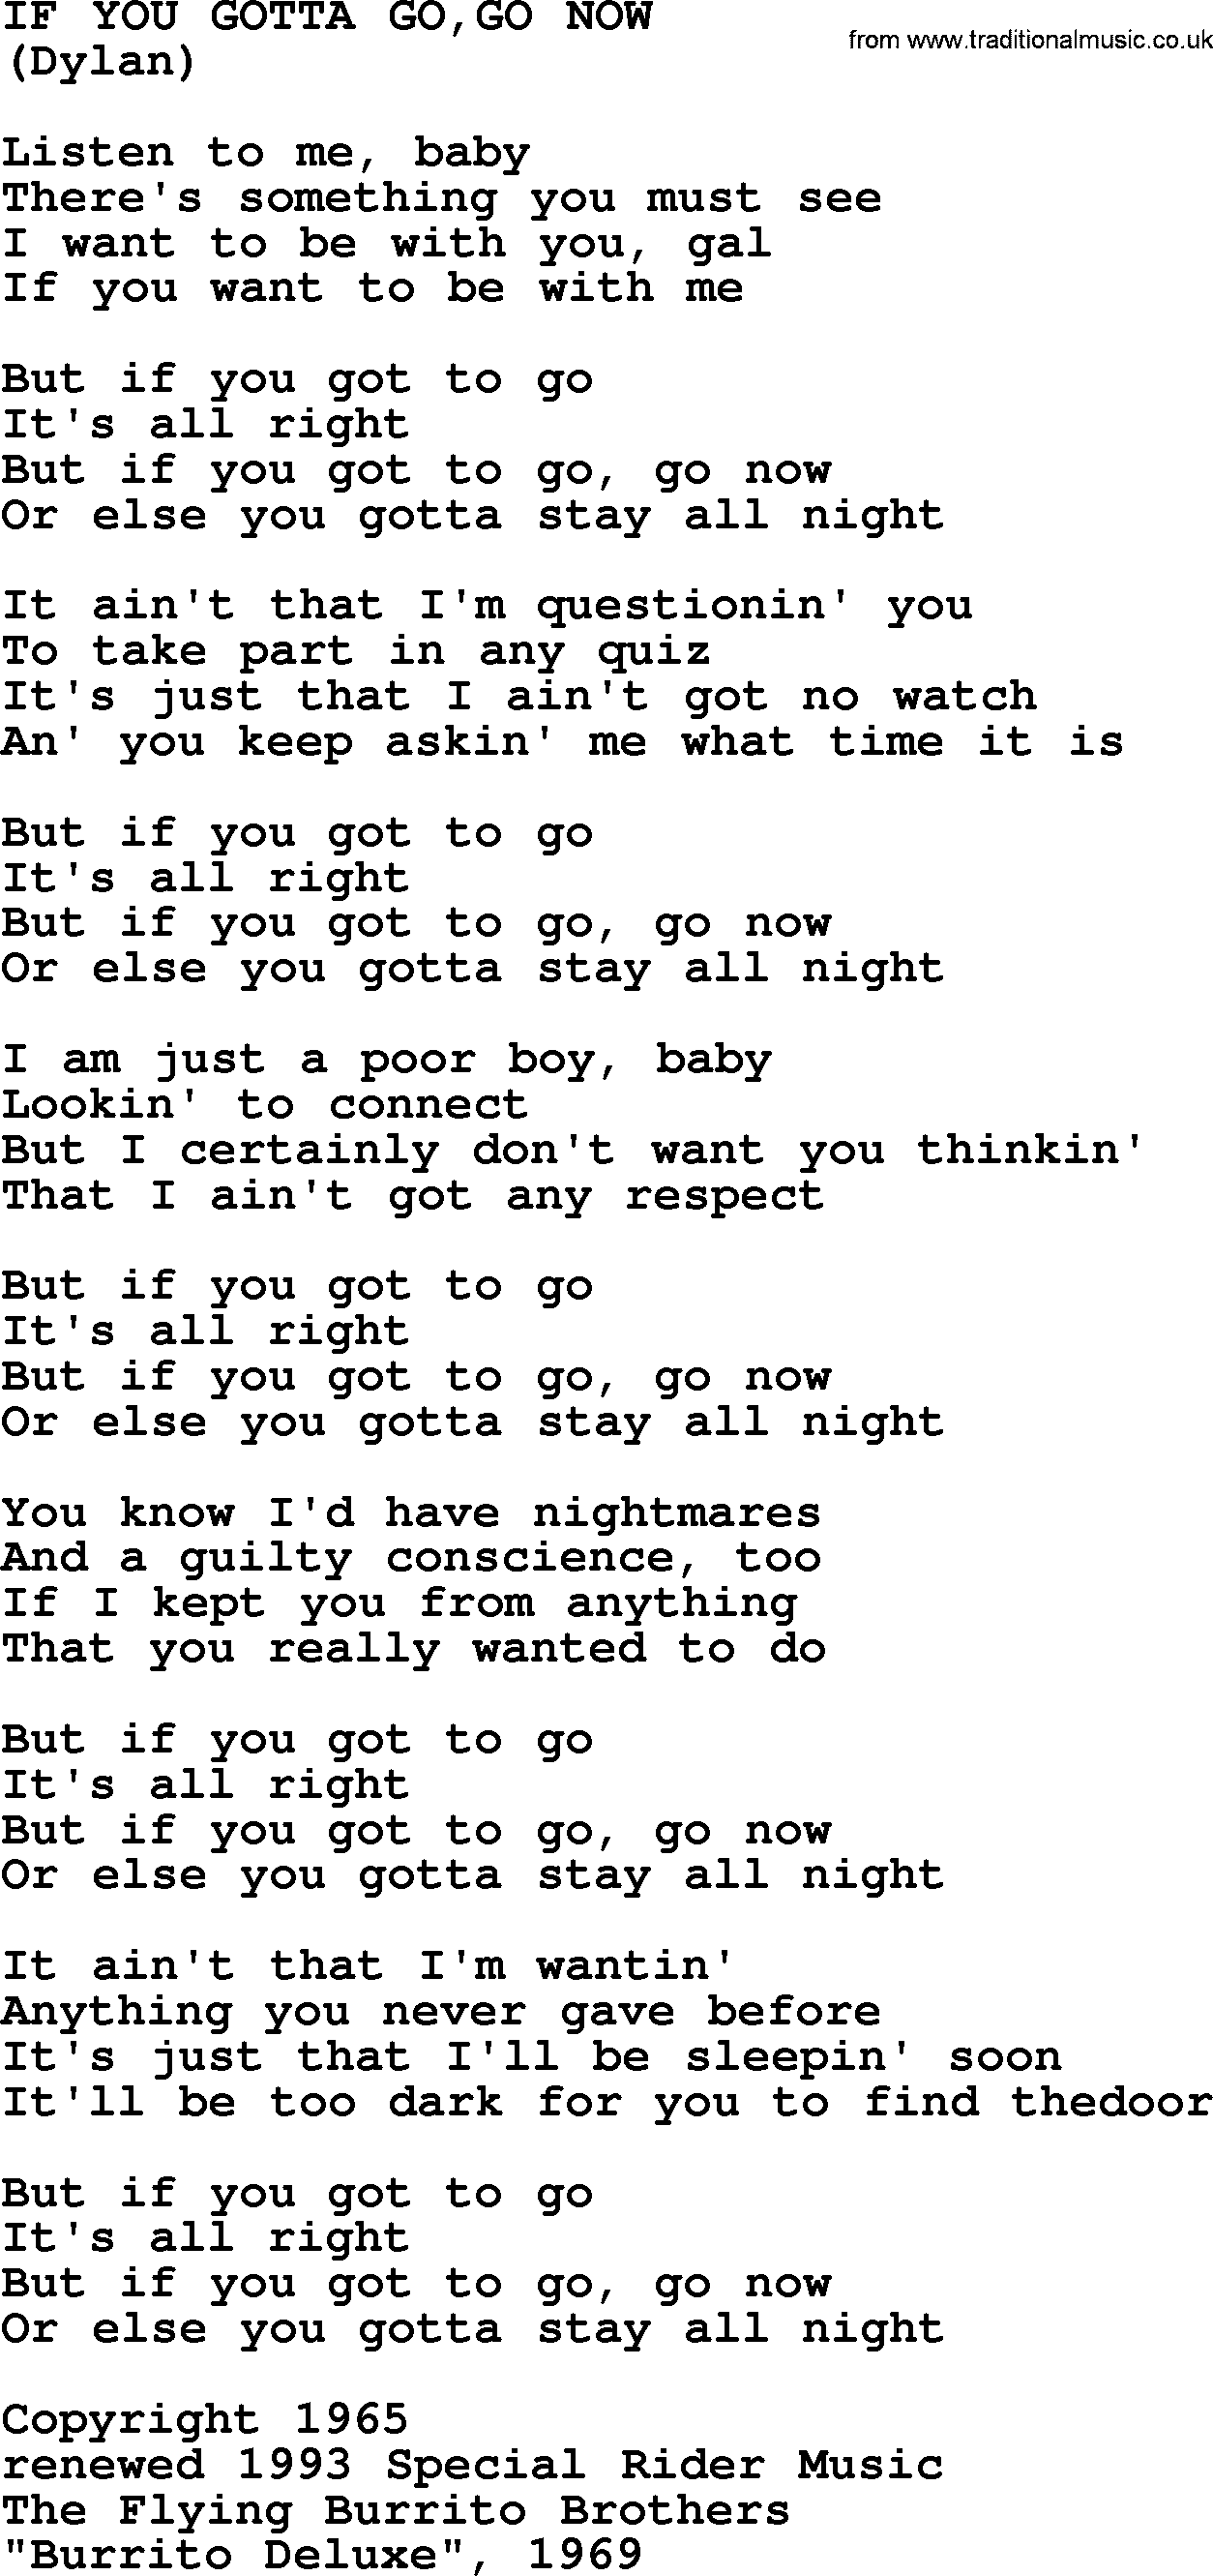 The Byrds song If You Gotta Go,go Now, lyrics